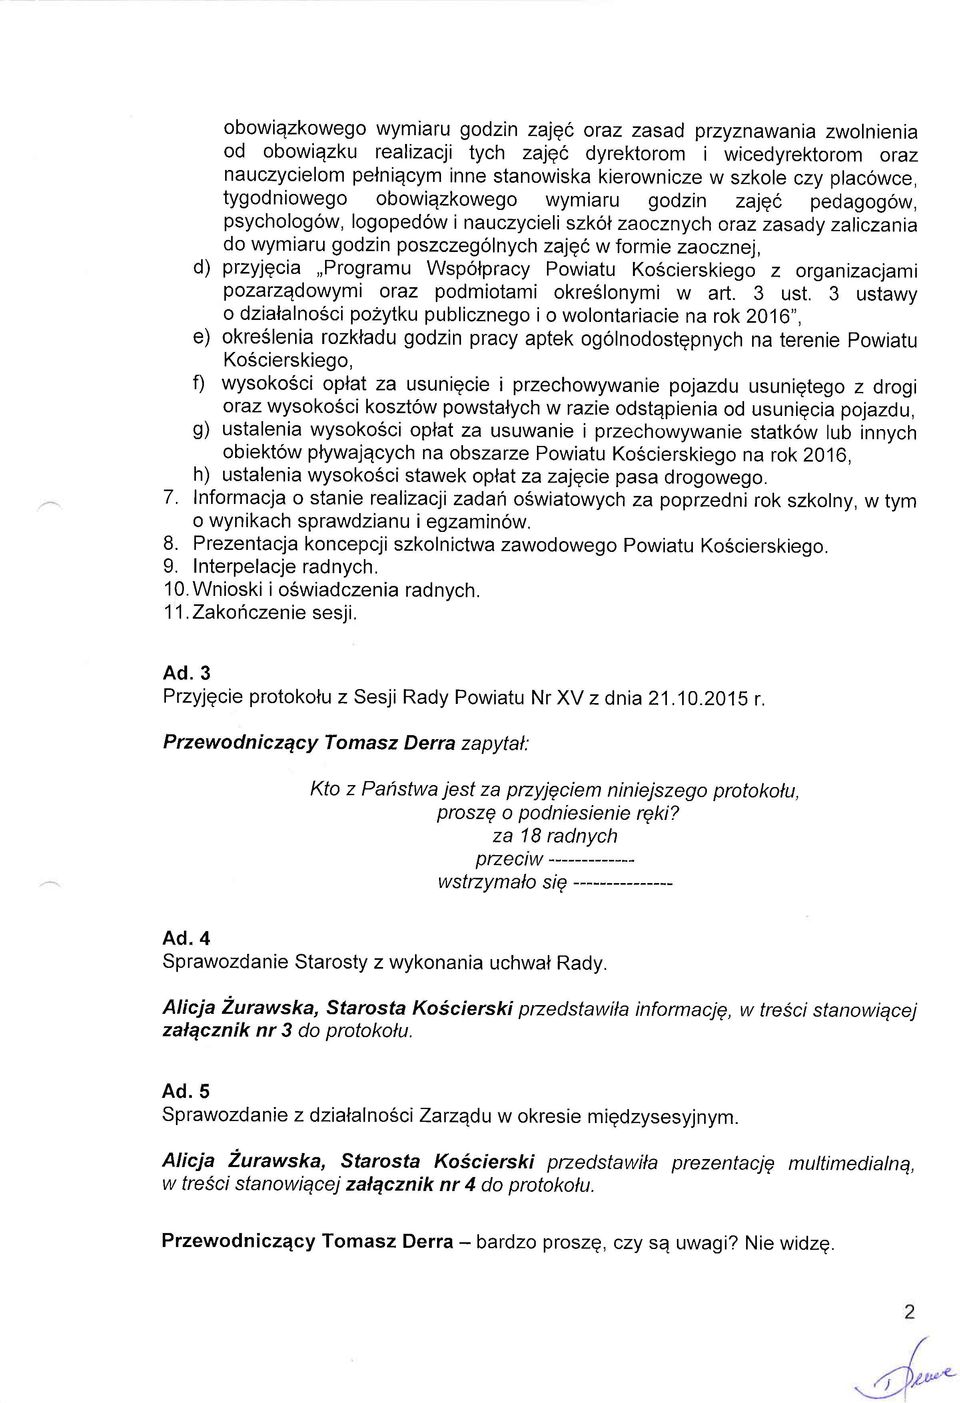 zaocznej, d) przyjgcia,,programu Wspotpracy Powiatu Koscierskiego z organizacjami pozarzqdowymi oraz podmiotami okreslonymi w art. 3 ust.